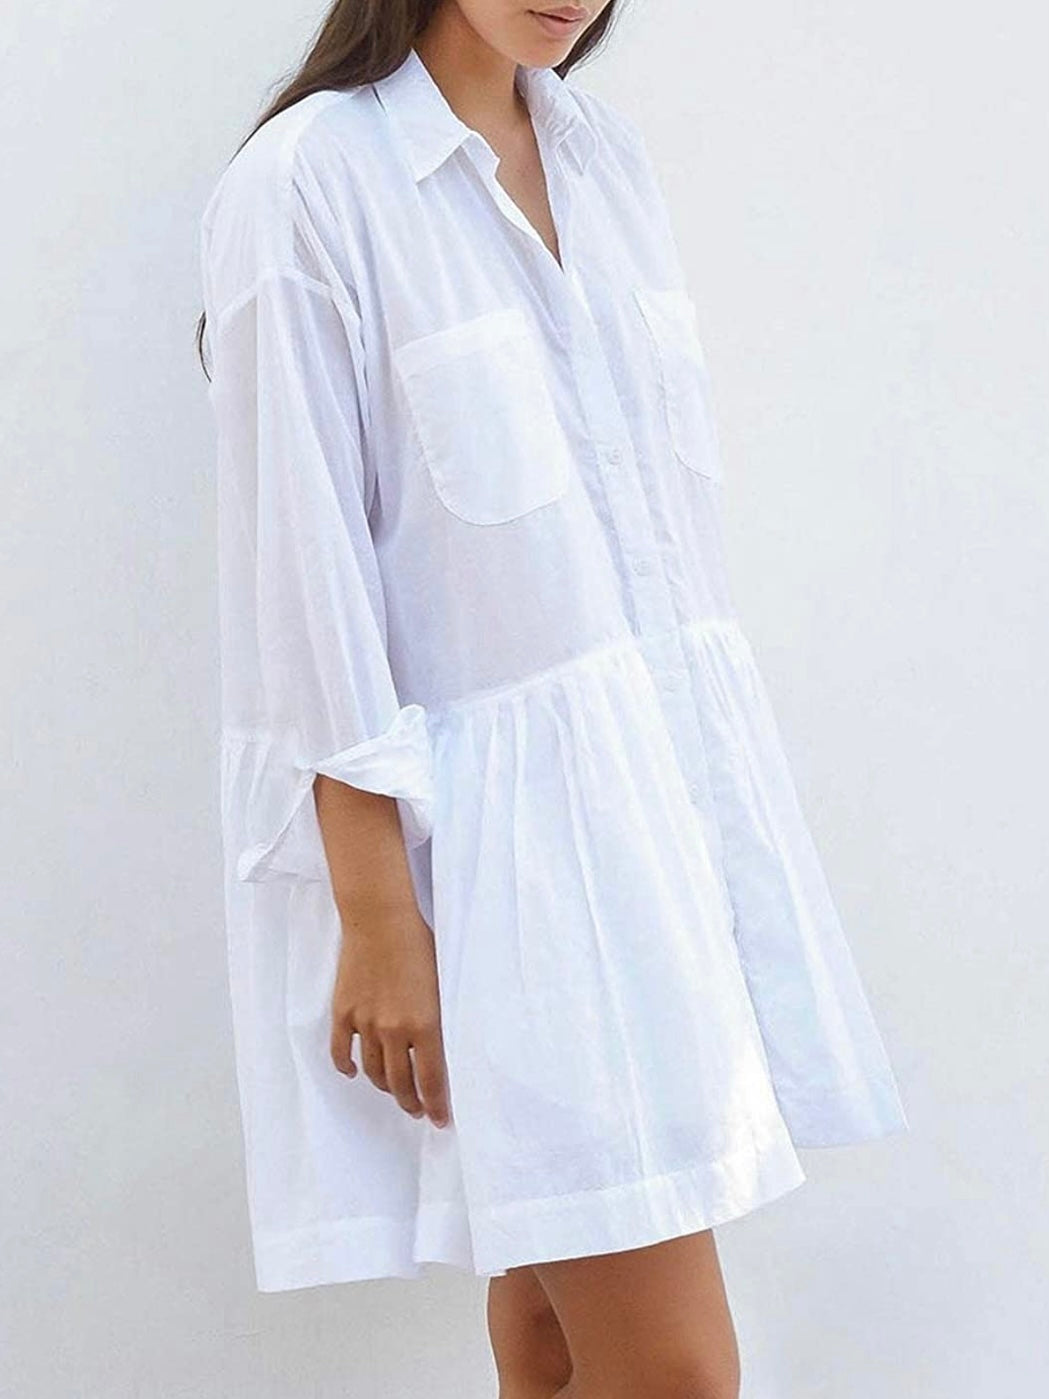 White beach short dress/long shirt